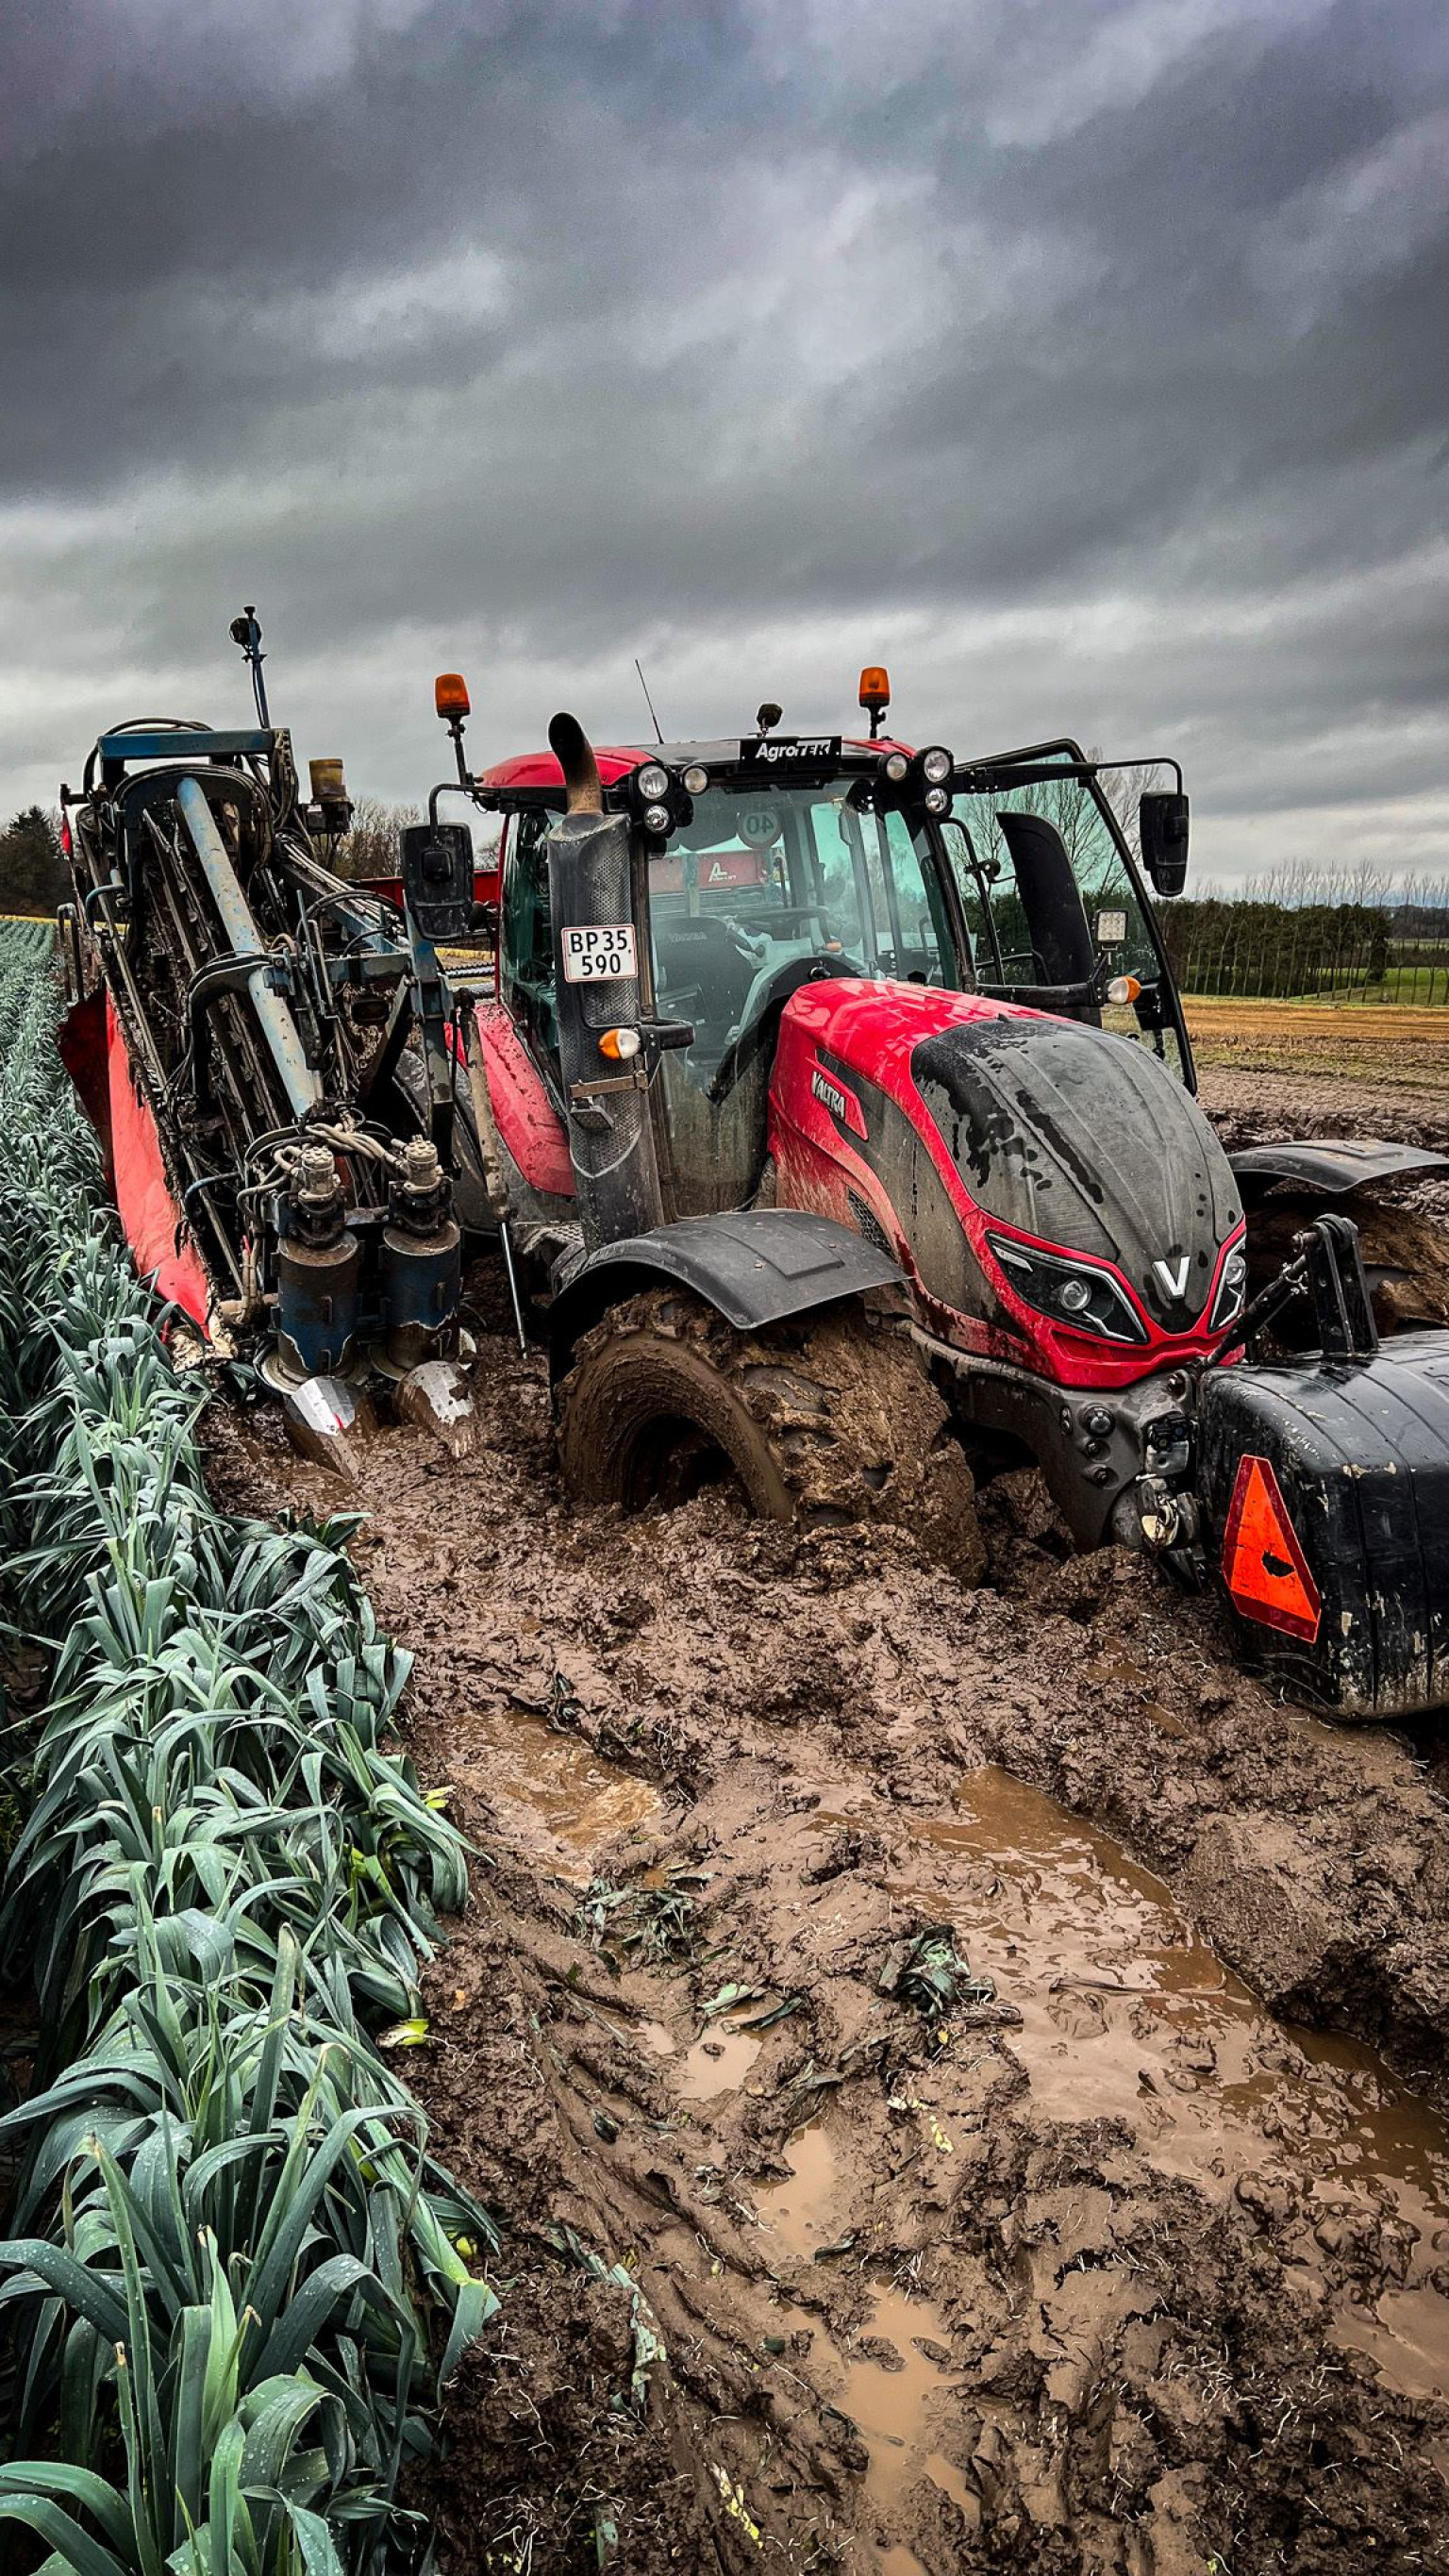 En traktor er kørt fast i en oversvømmet porremark hos Dangrow - næste år har de sandsynligvis bæltekøretøjer parate, hvis markerne kommer under vand